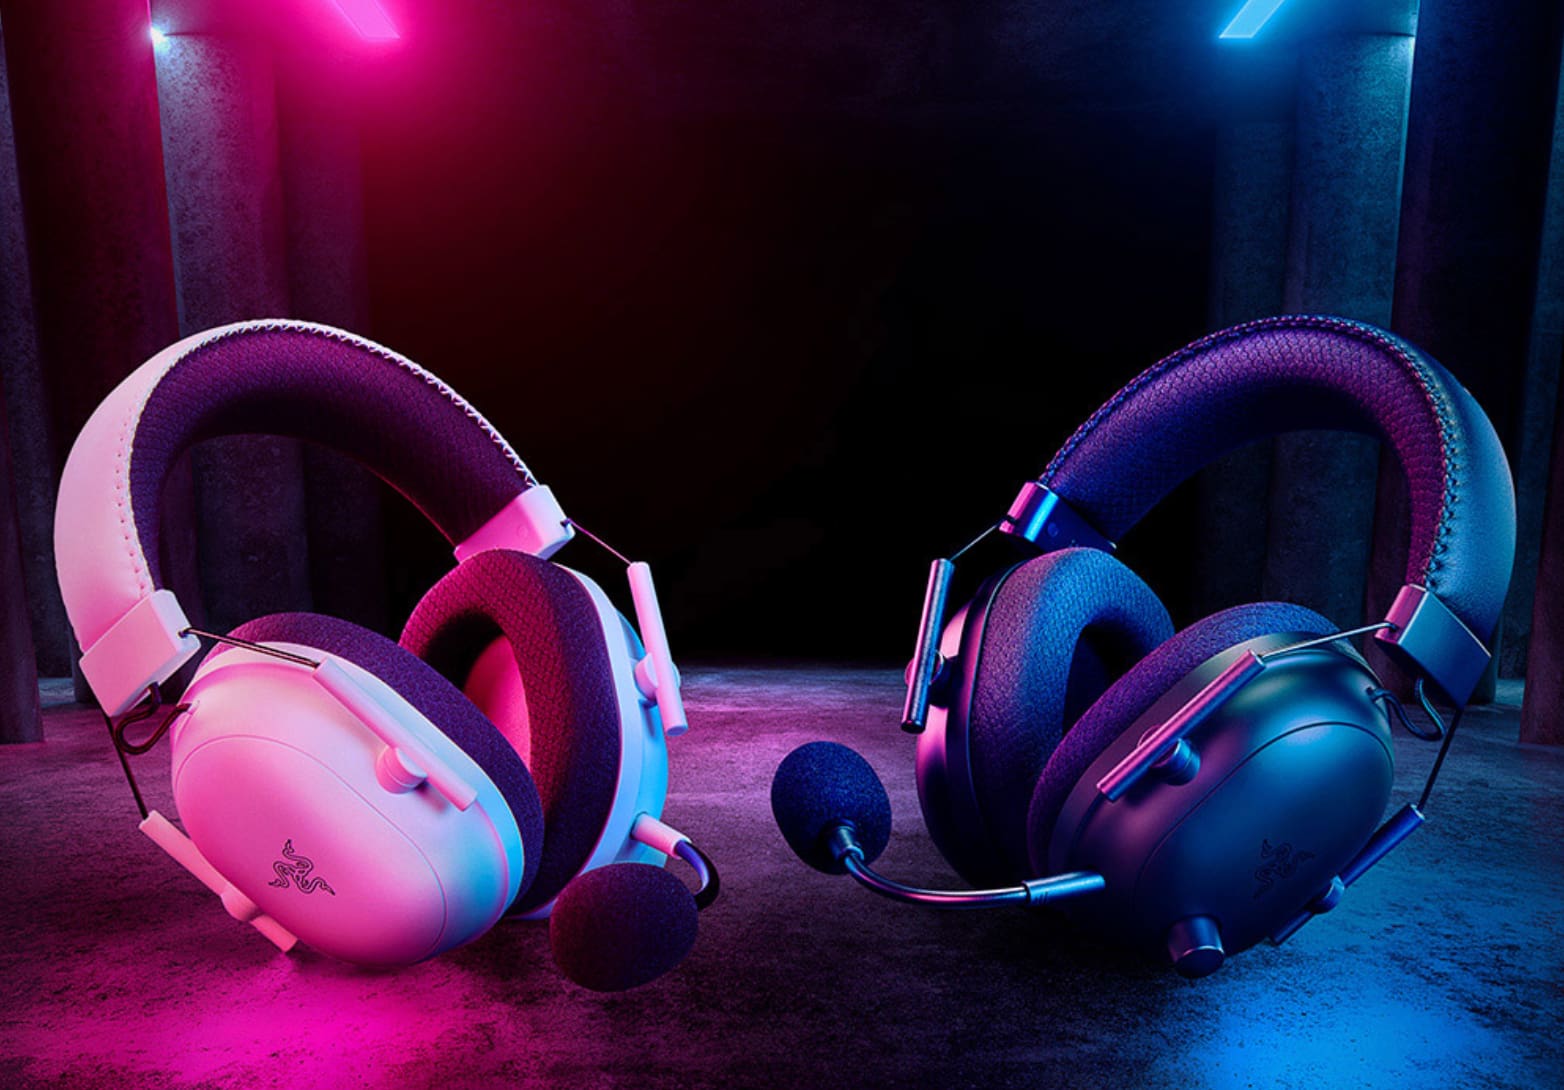 Razer Blackshark V2 Pro closed-back headphones for gaming